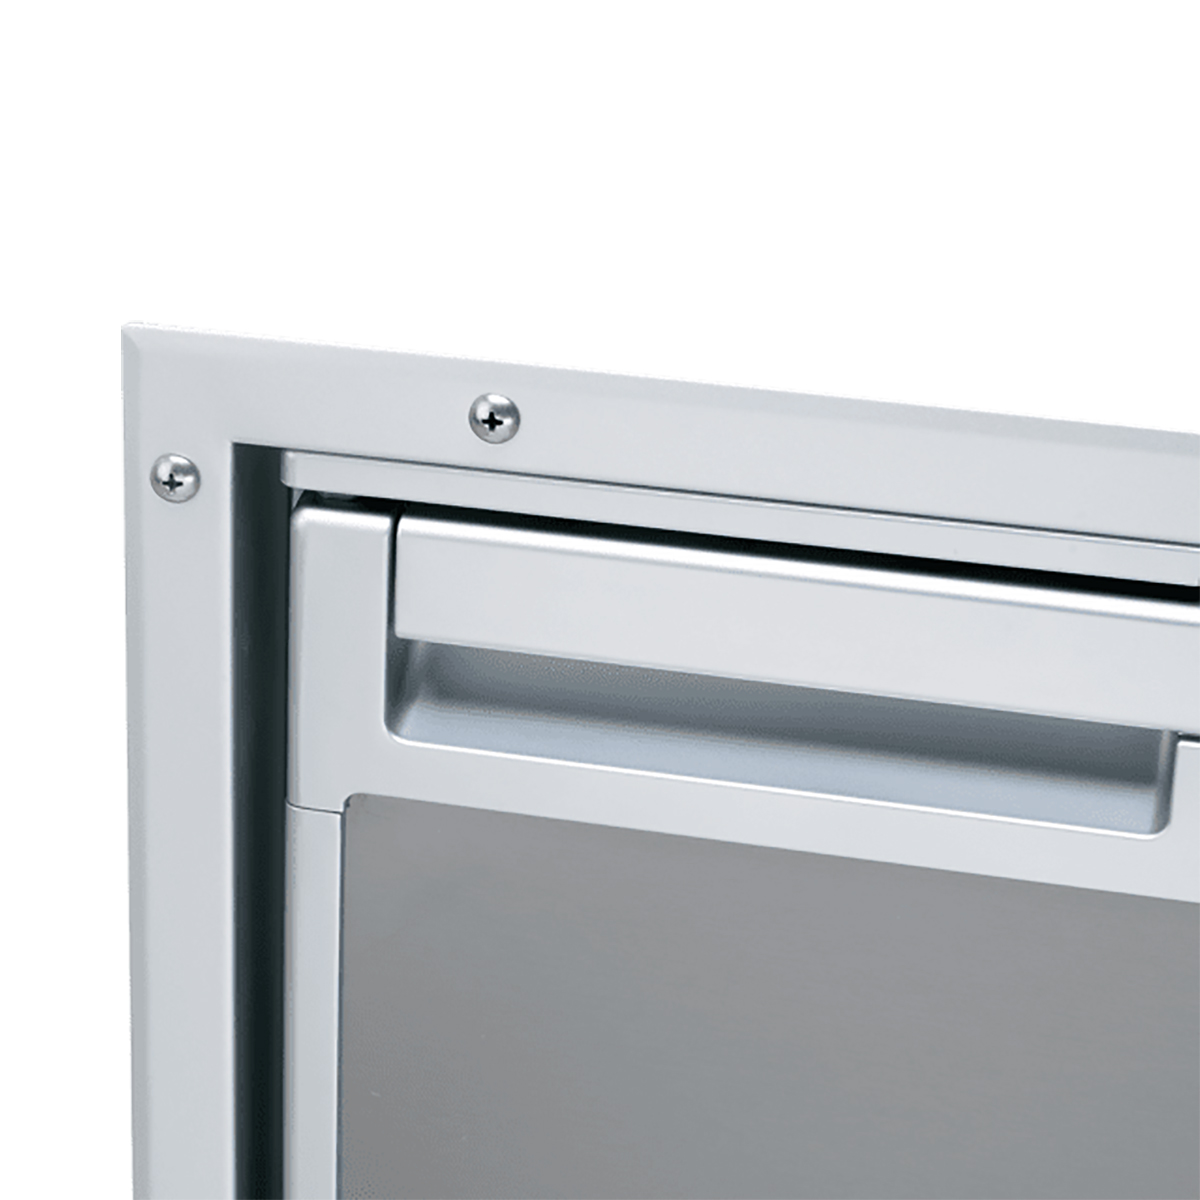 Монтажная рама с утапливаемым креплением Dometic CoolMatic CR-IFFM-65-N 9105306411 для холодильников CRX 65